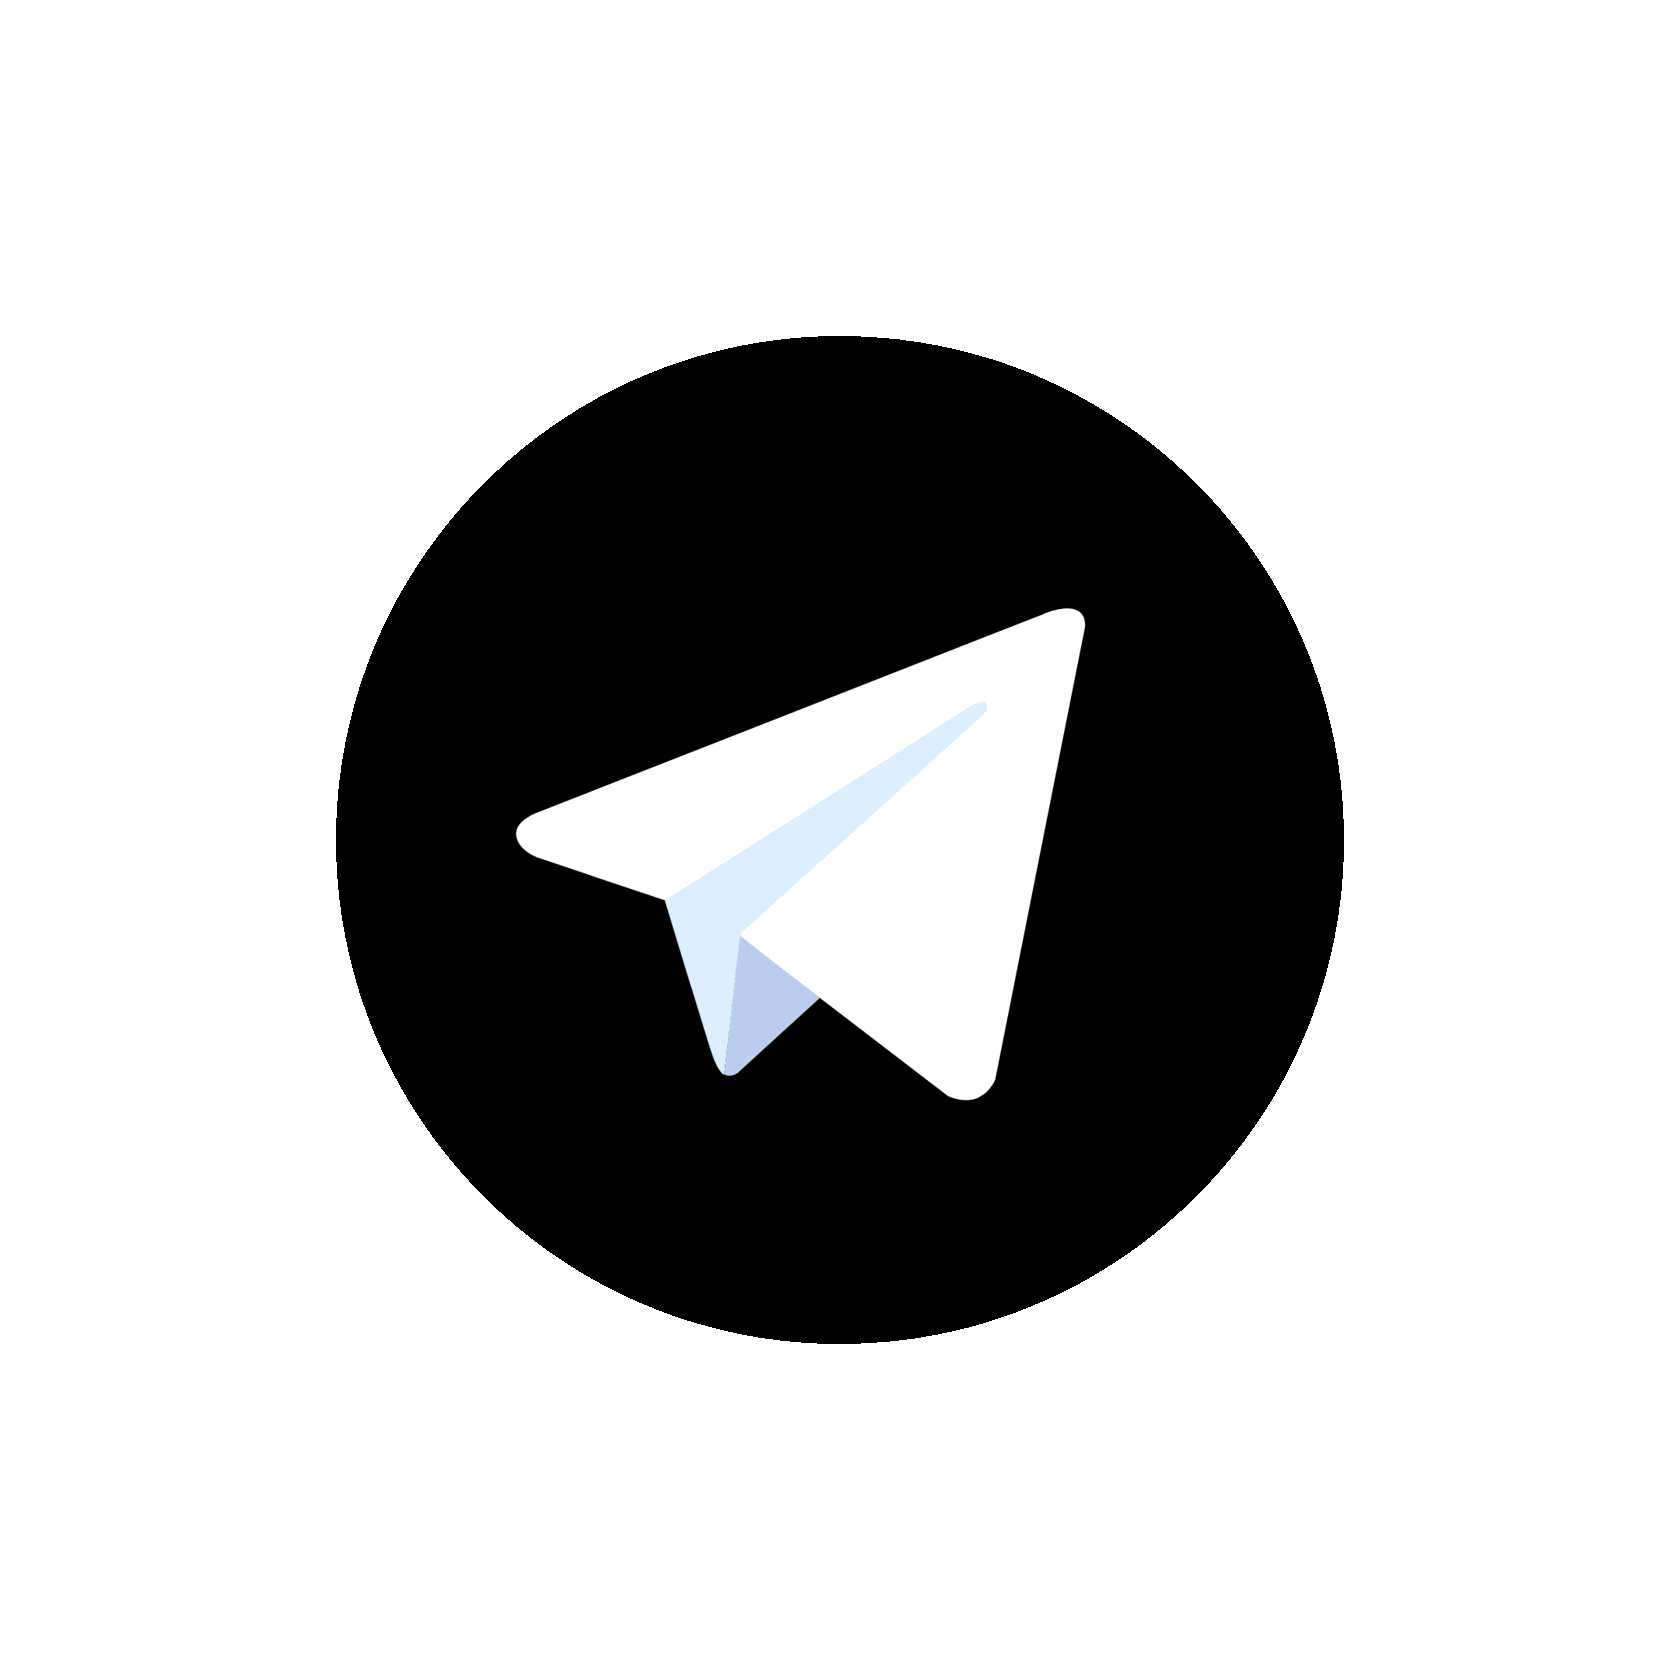 Черная аватарка телеграмма. Логотип телеграмм. Пиктограмма телеграм. Логотип телеграм черный. Темная иконка телеграмм.